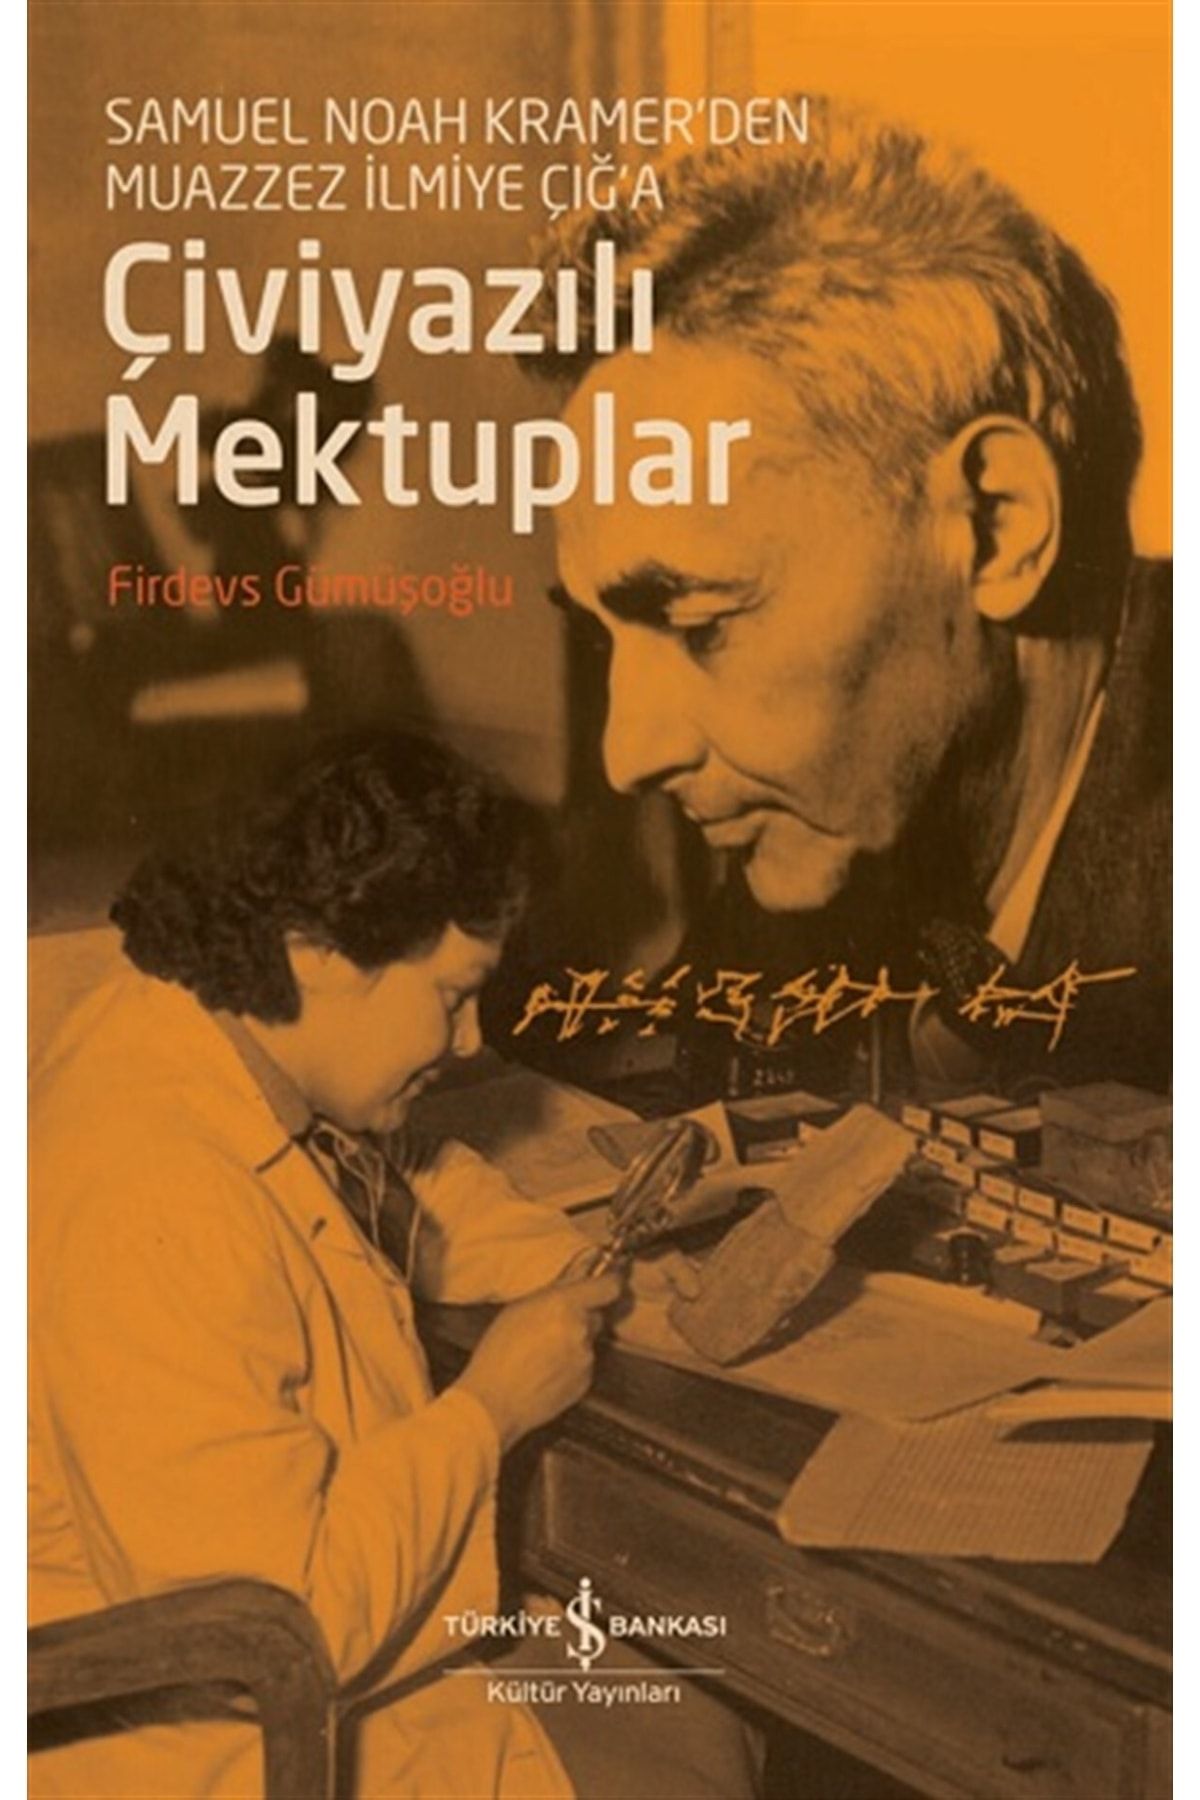 Türkiye İş Bankası Kültür Yayınları Çiviyazılı Mektuplar - Samuel Noah Kramer'den Muazzez Ilmiye Çığ'a